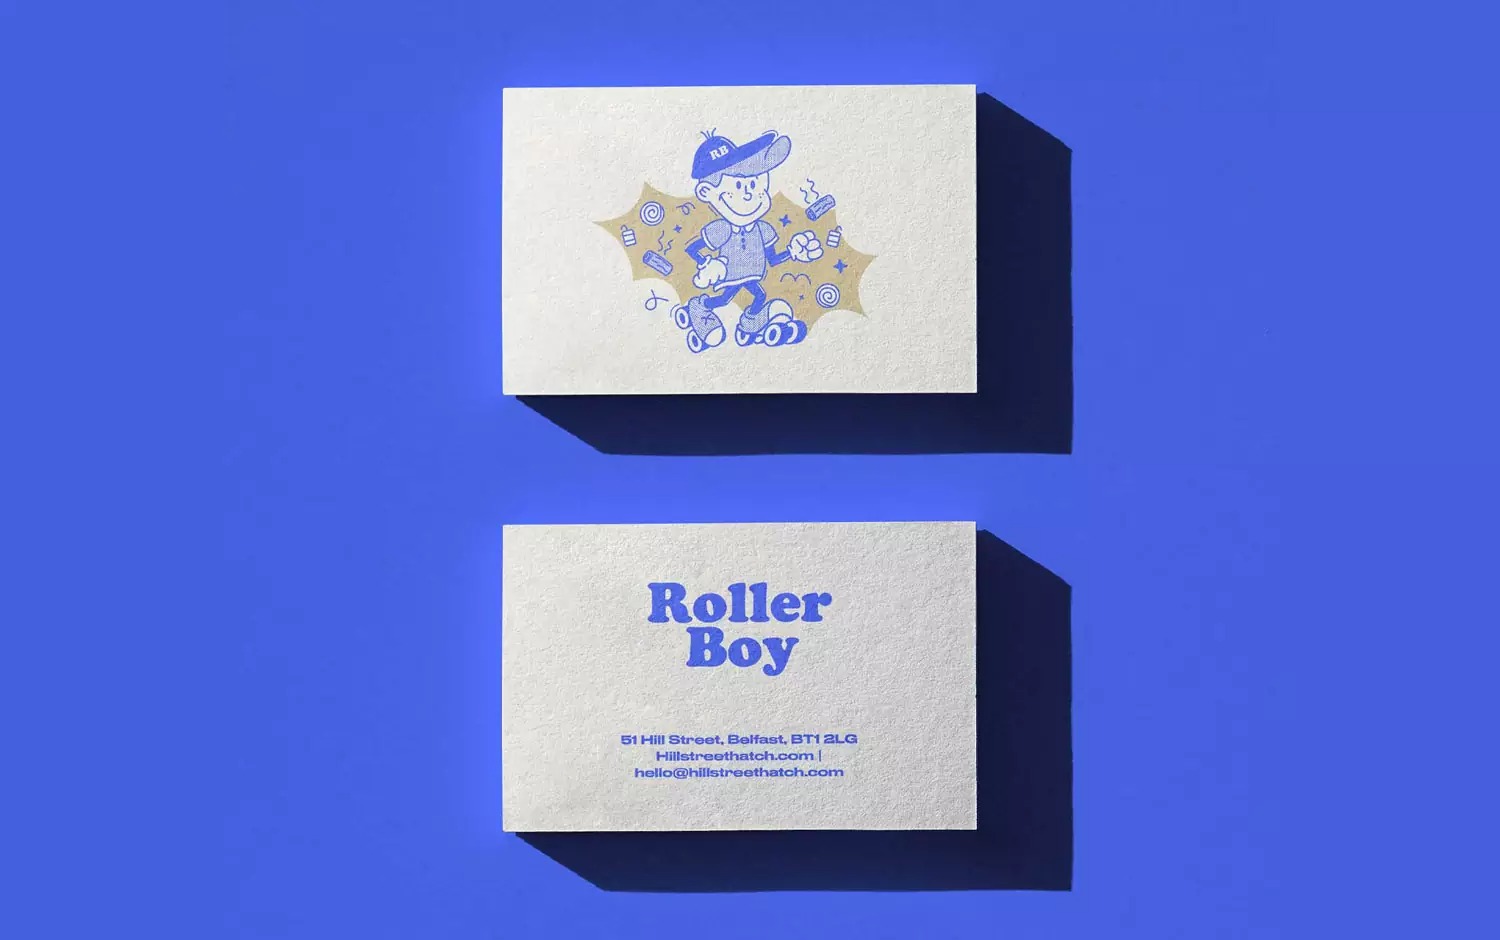 复古风格的Roller Boy餐厅品牌设计